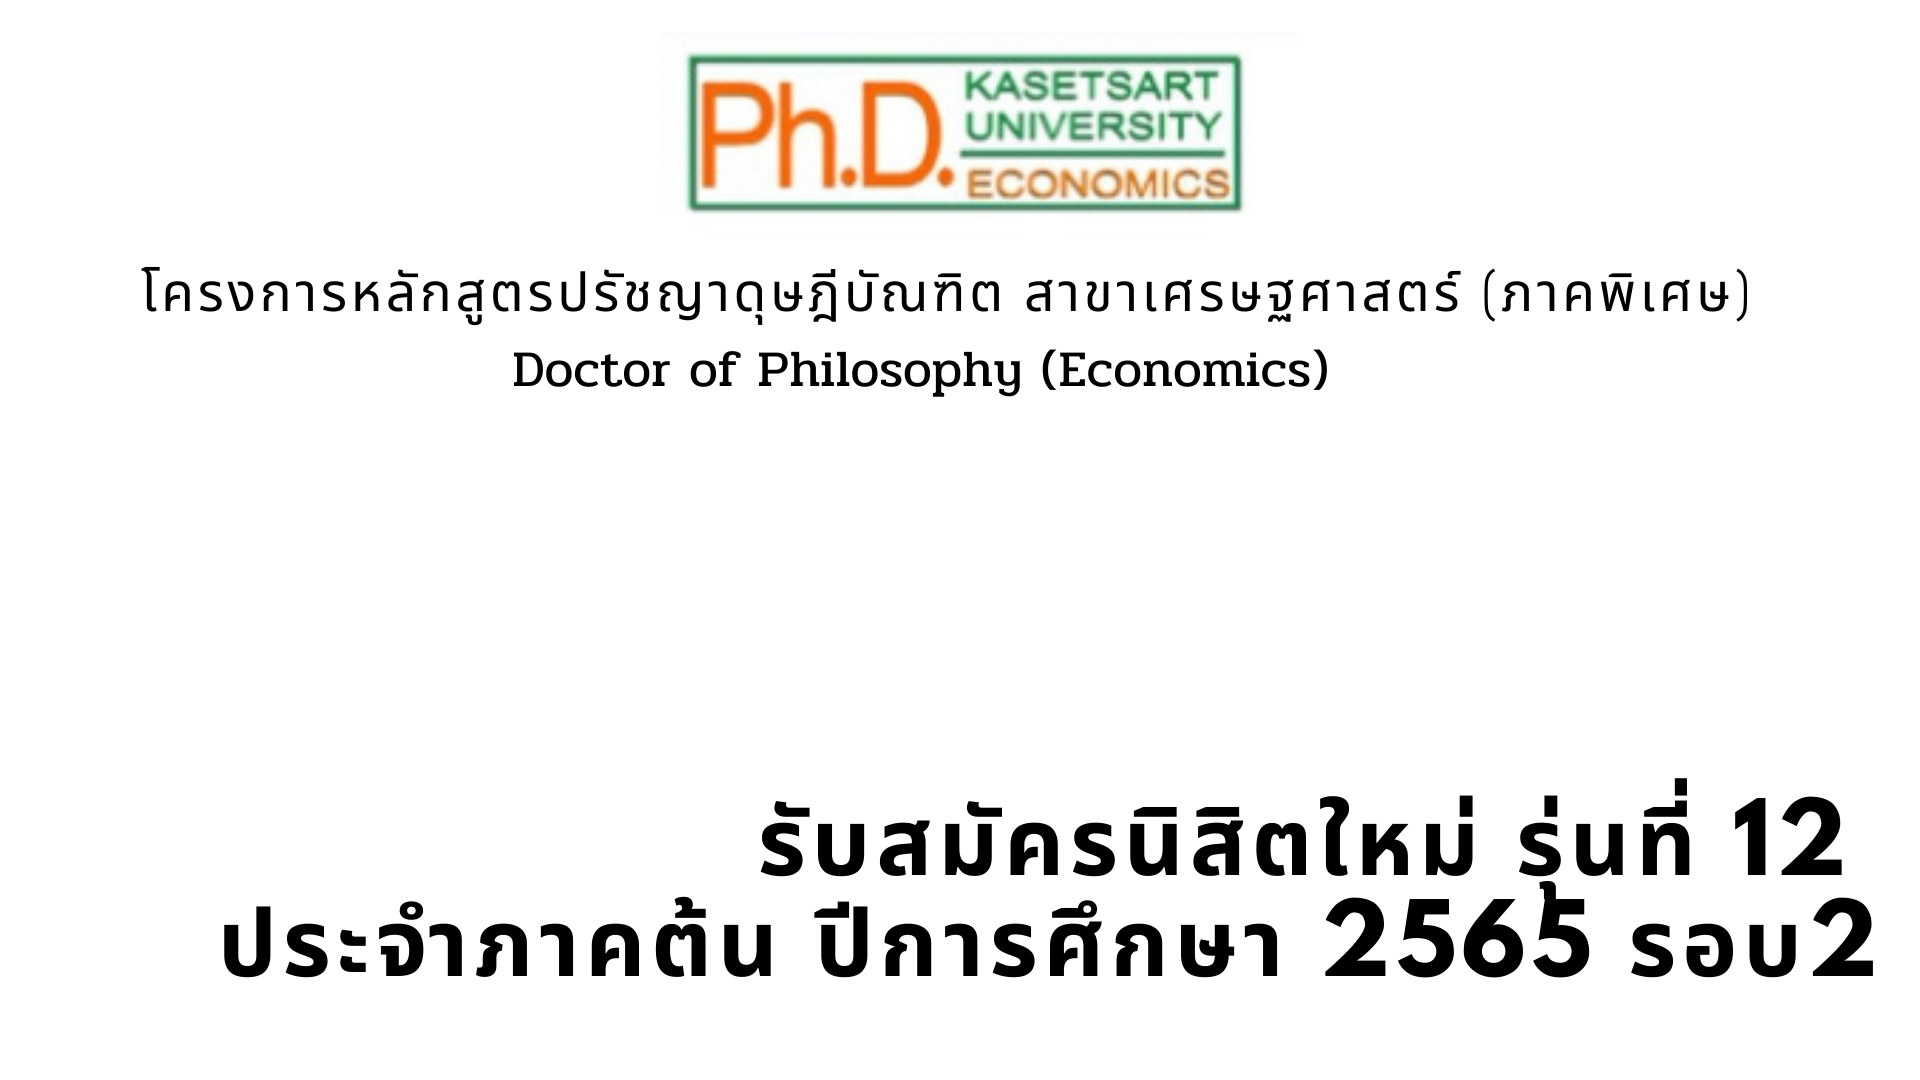 รับสมัคร Ph.D. รุ่นที่ 12 ประจำภาคต้น ประจำปีการศึกษา 2565 รอบที่ 2 ระหว่างวันที่ 23 กุมภาพันธ์ 2565 ถึง วันที่ 13 มีนาคม 2565